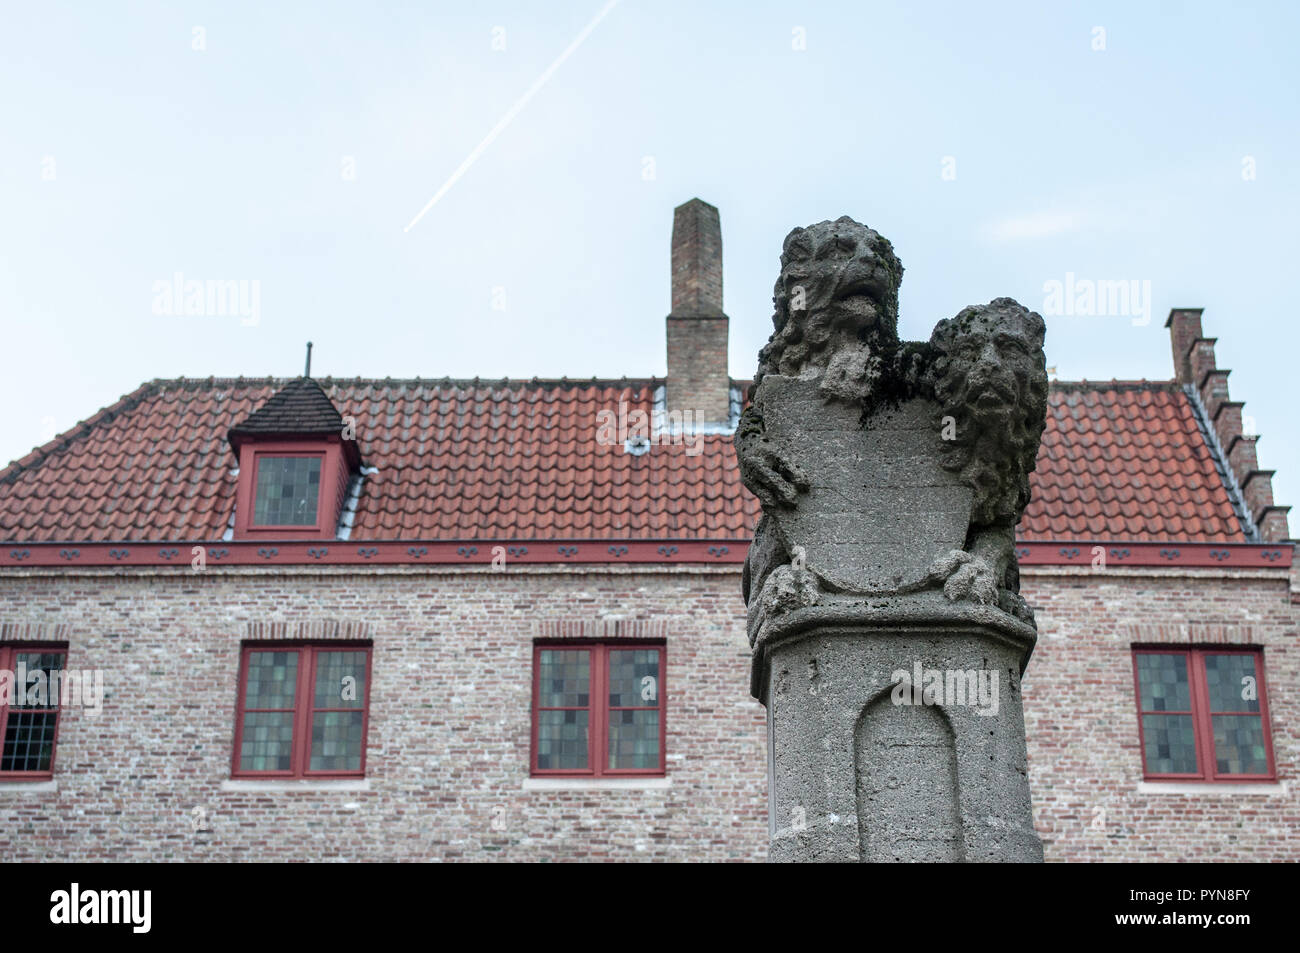 La célèbre place de lions Huidenvettersplein à Bruges, Flandre occidentale, Belgique, Europe. Site du patrimoine de l'Unesco. Symboles flamands. Banque D'Images